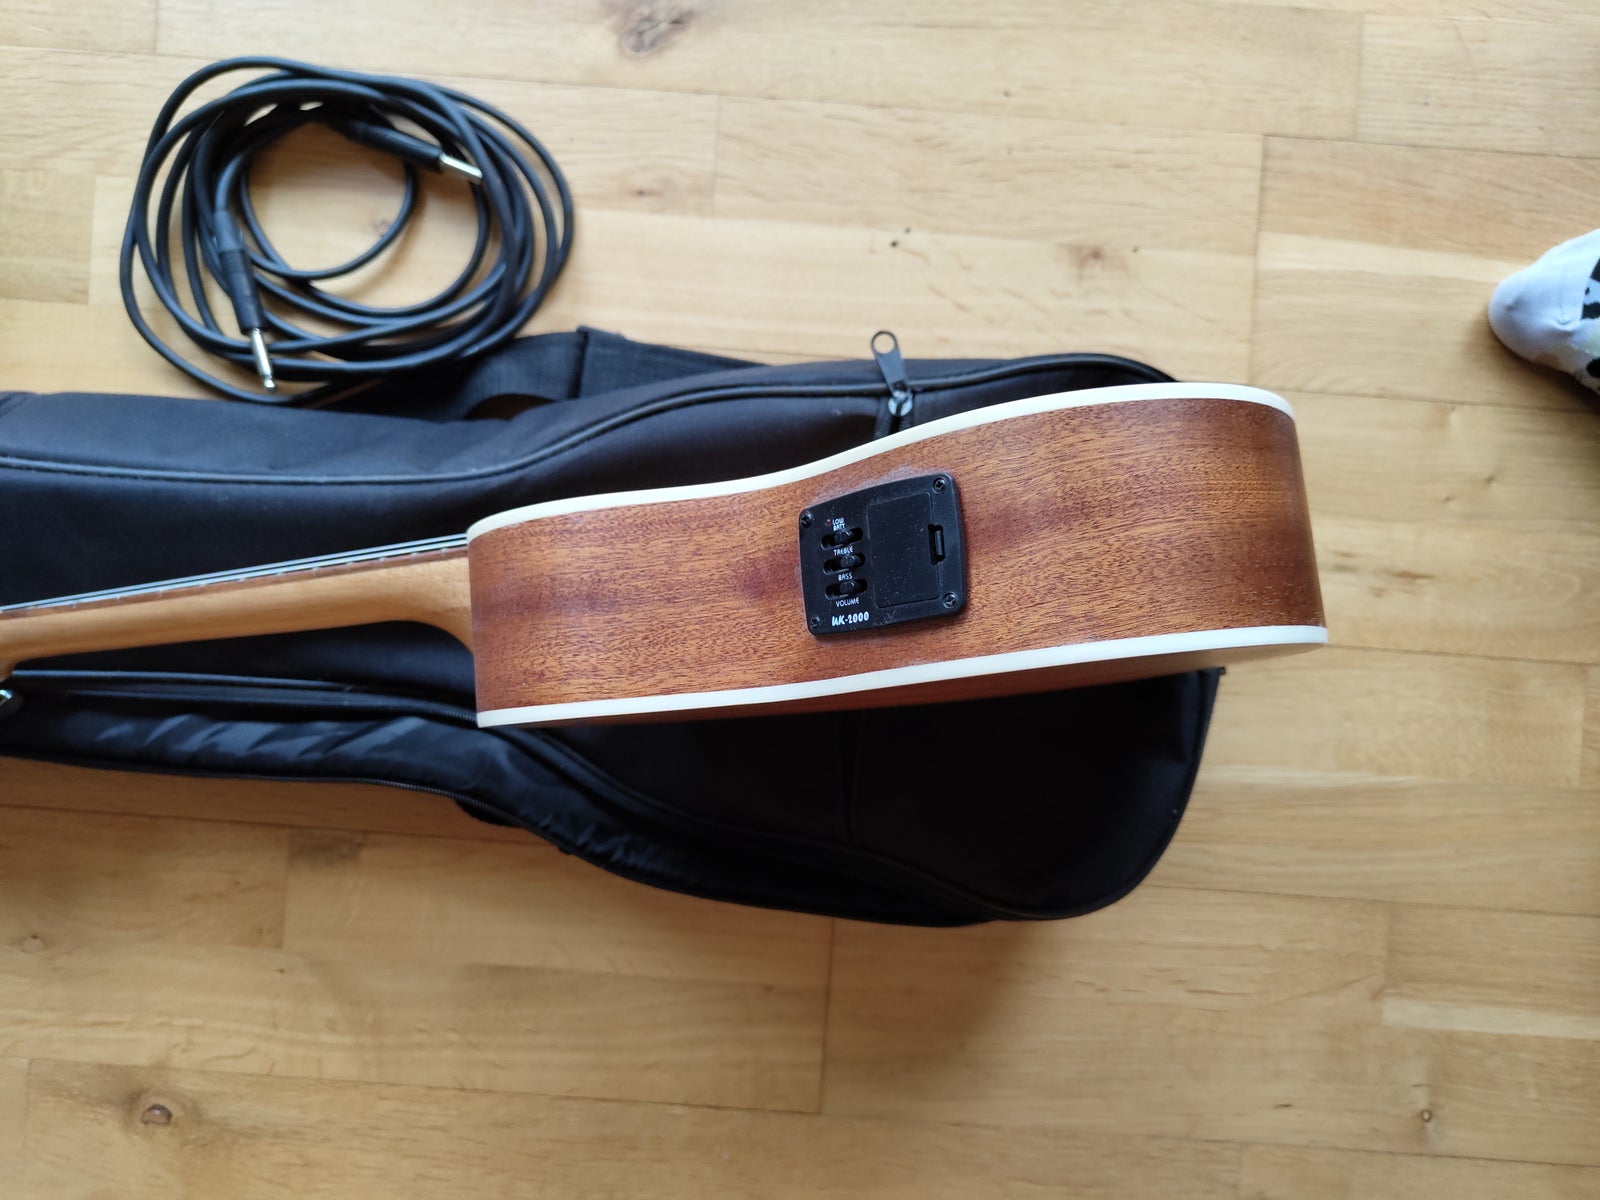 Halvakustisk tenor ukulele, Classic Cantabile US-100PU S